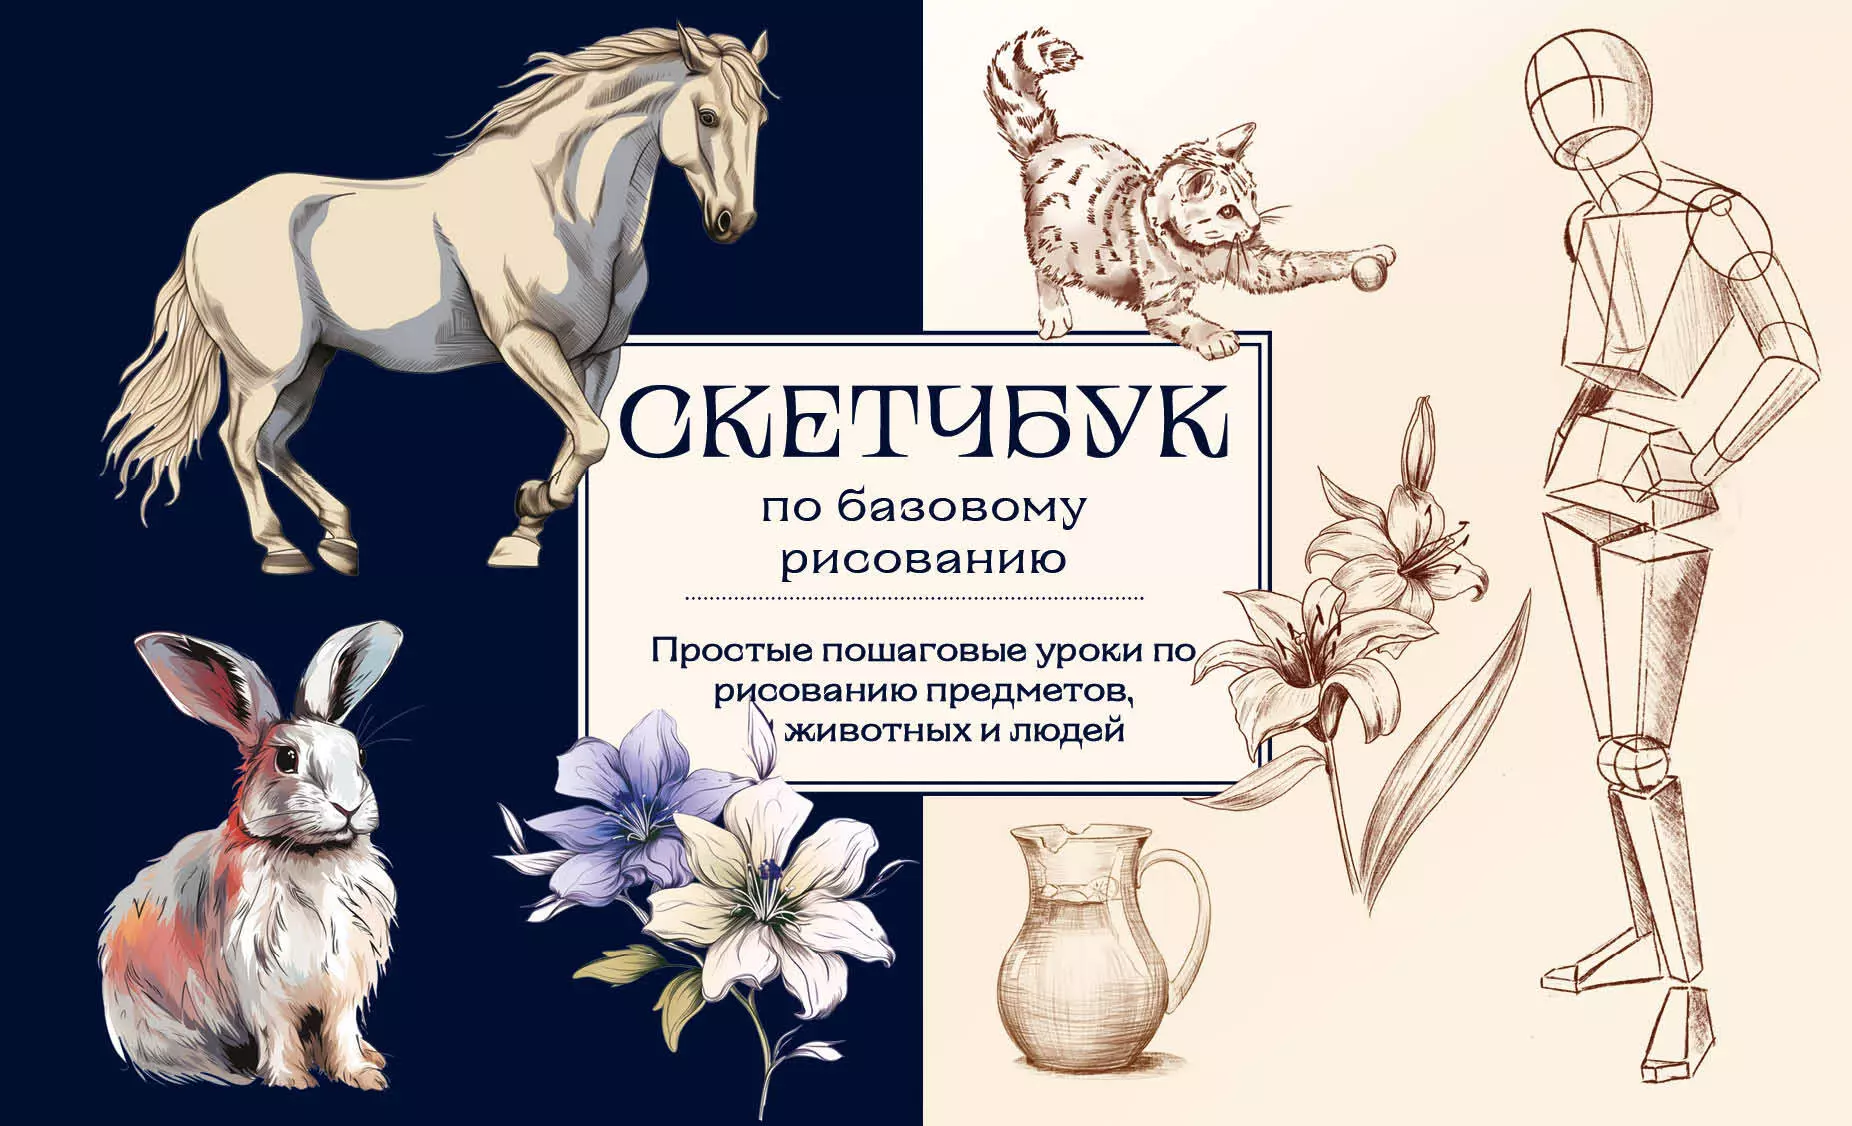 Николаева Анна Николаевна - Скетчбук по базовому рисованию. Простые пошаговые уроки по рисованию предметов, животных и людей